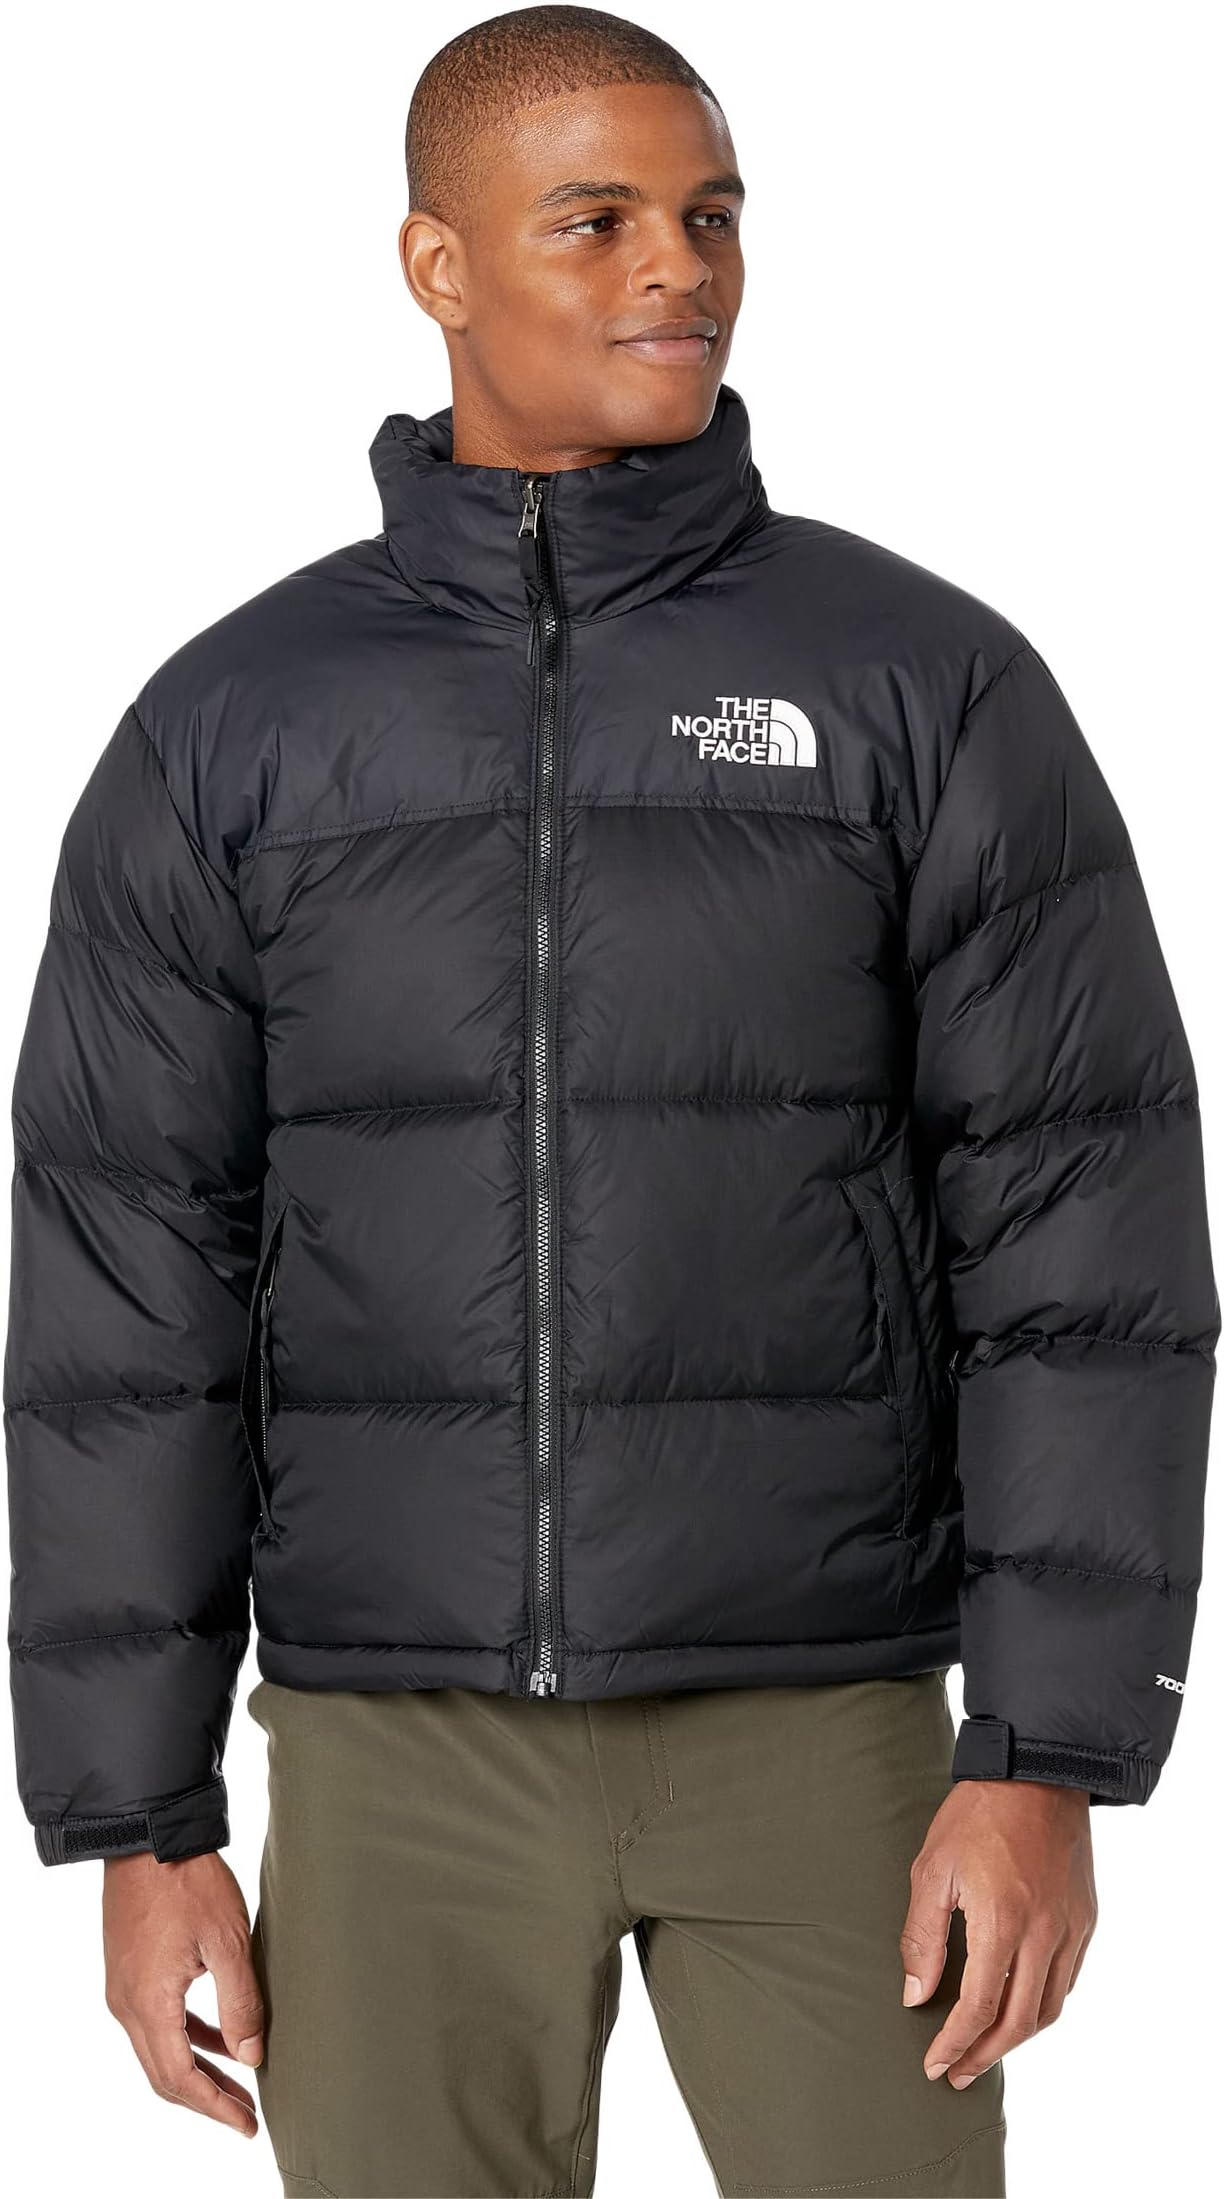 Куртка Nuptse 1996 года The North Face, цвет Recycled TNF Black куртка nuptse 1996 года в стиле ретро – мужская the north face цвет recycled tnf black